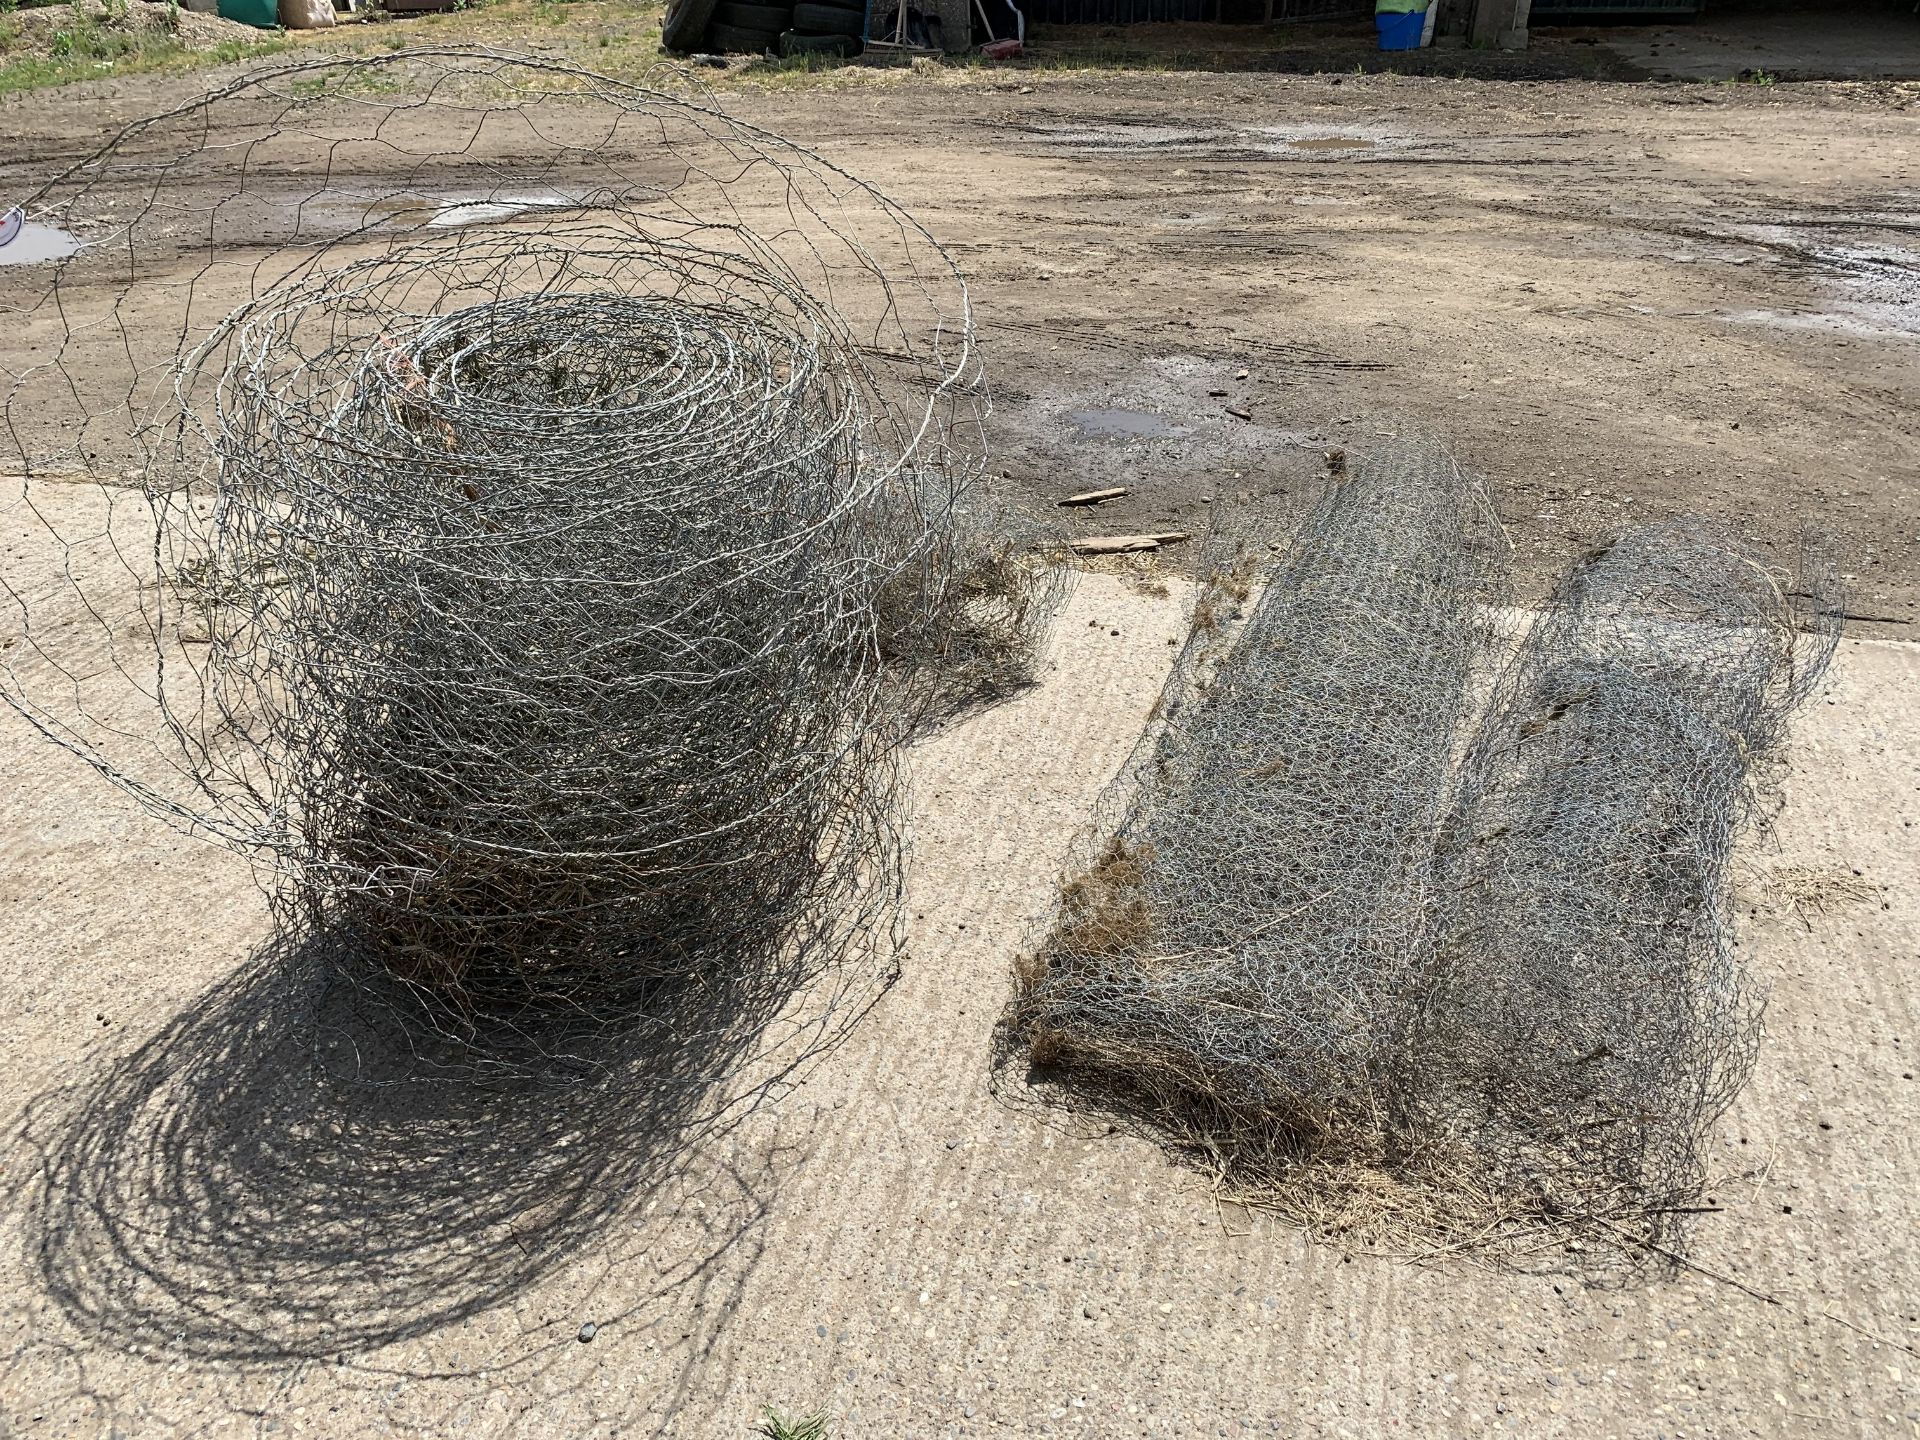 Heap of netting